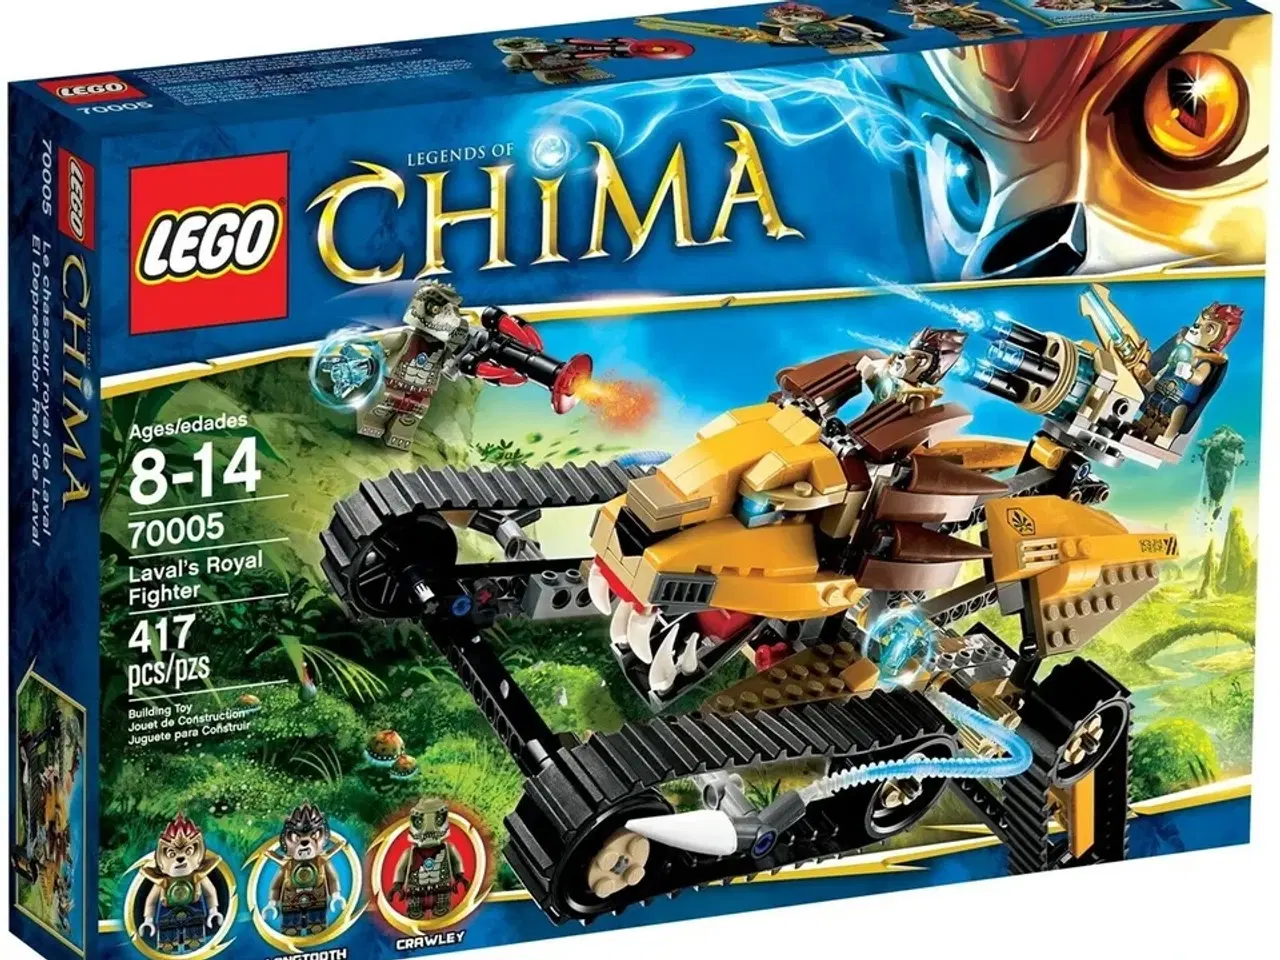 Billede 2 - LEGO Chima Lavals royale kampkøretøj model 70005